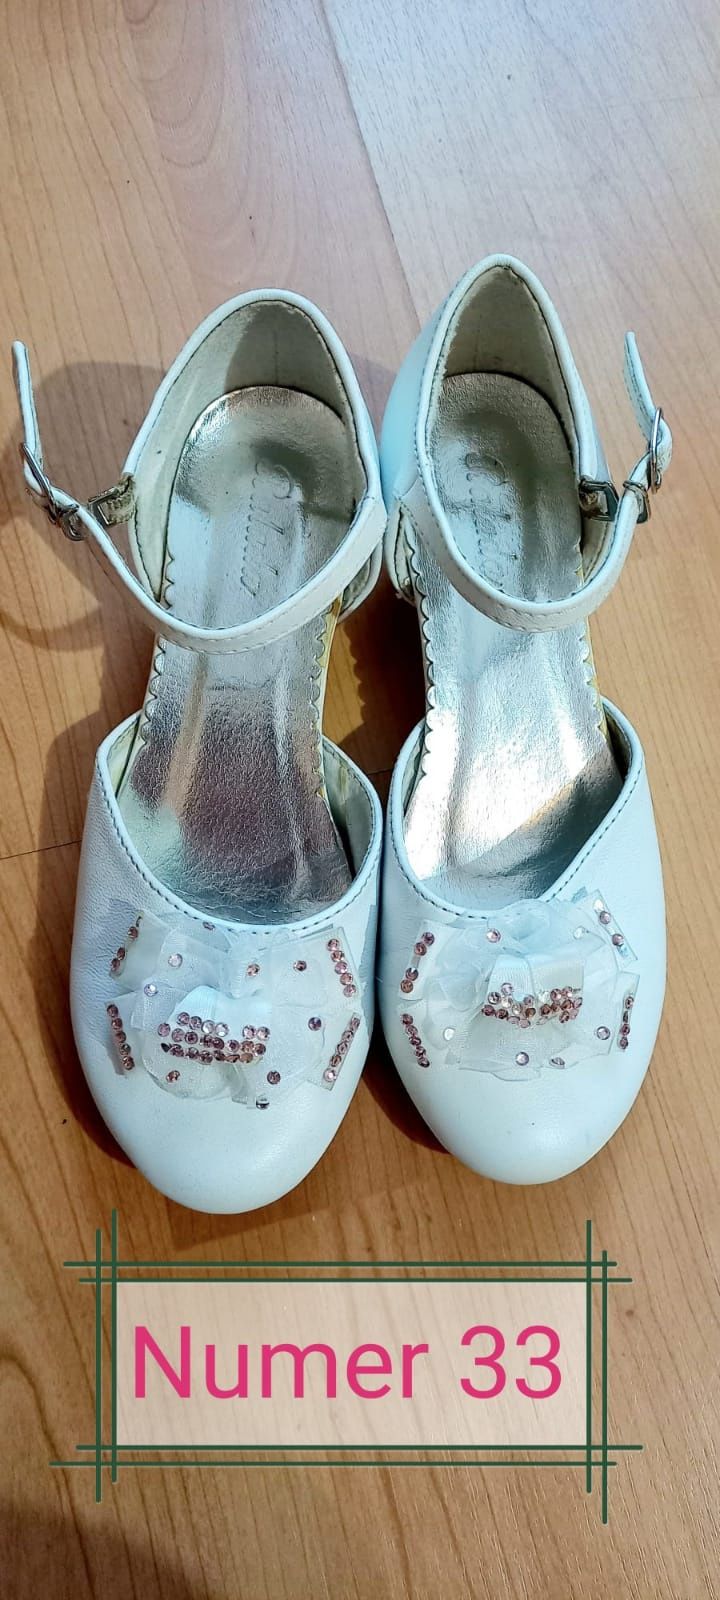 Białe buty komunijne dla dziewczynki nr 33